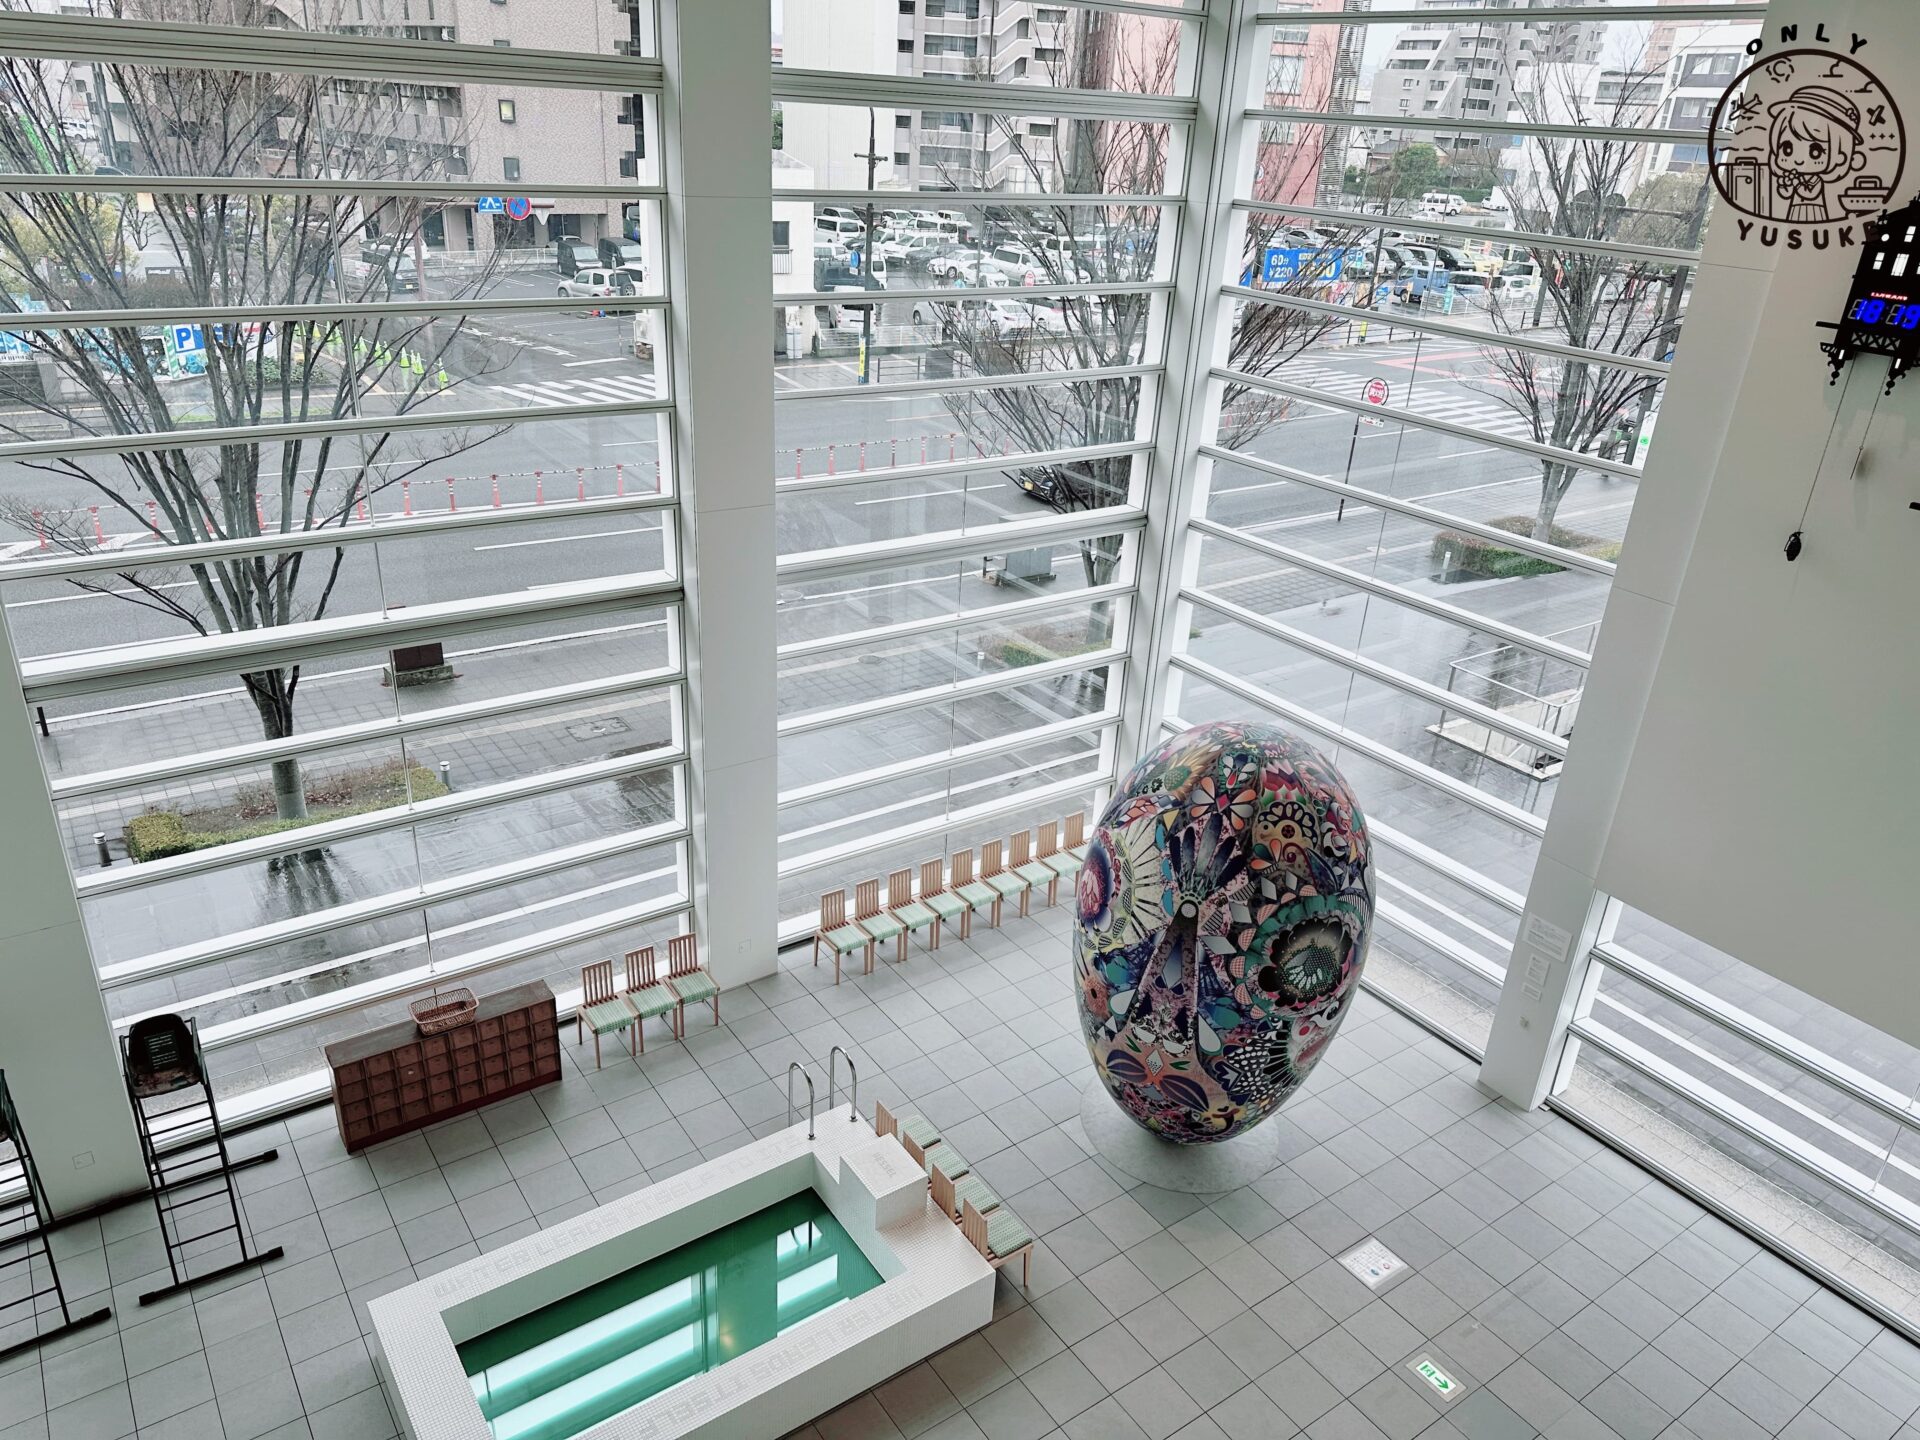 大分美術館馬塞爾·萬德斯所設計的作品–歐亞花園精神 2015